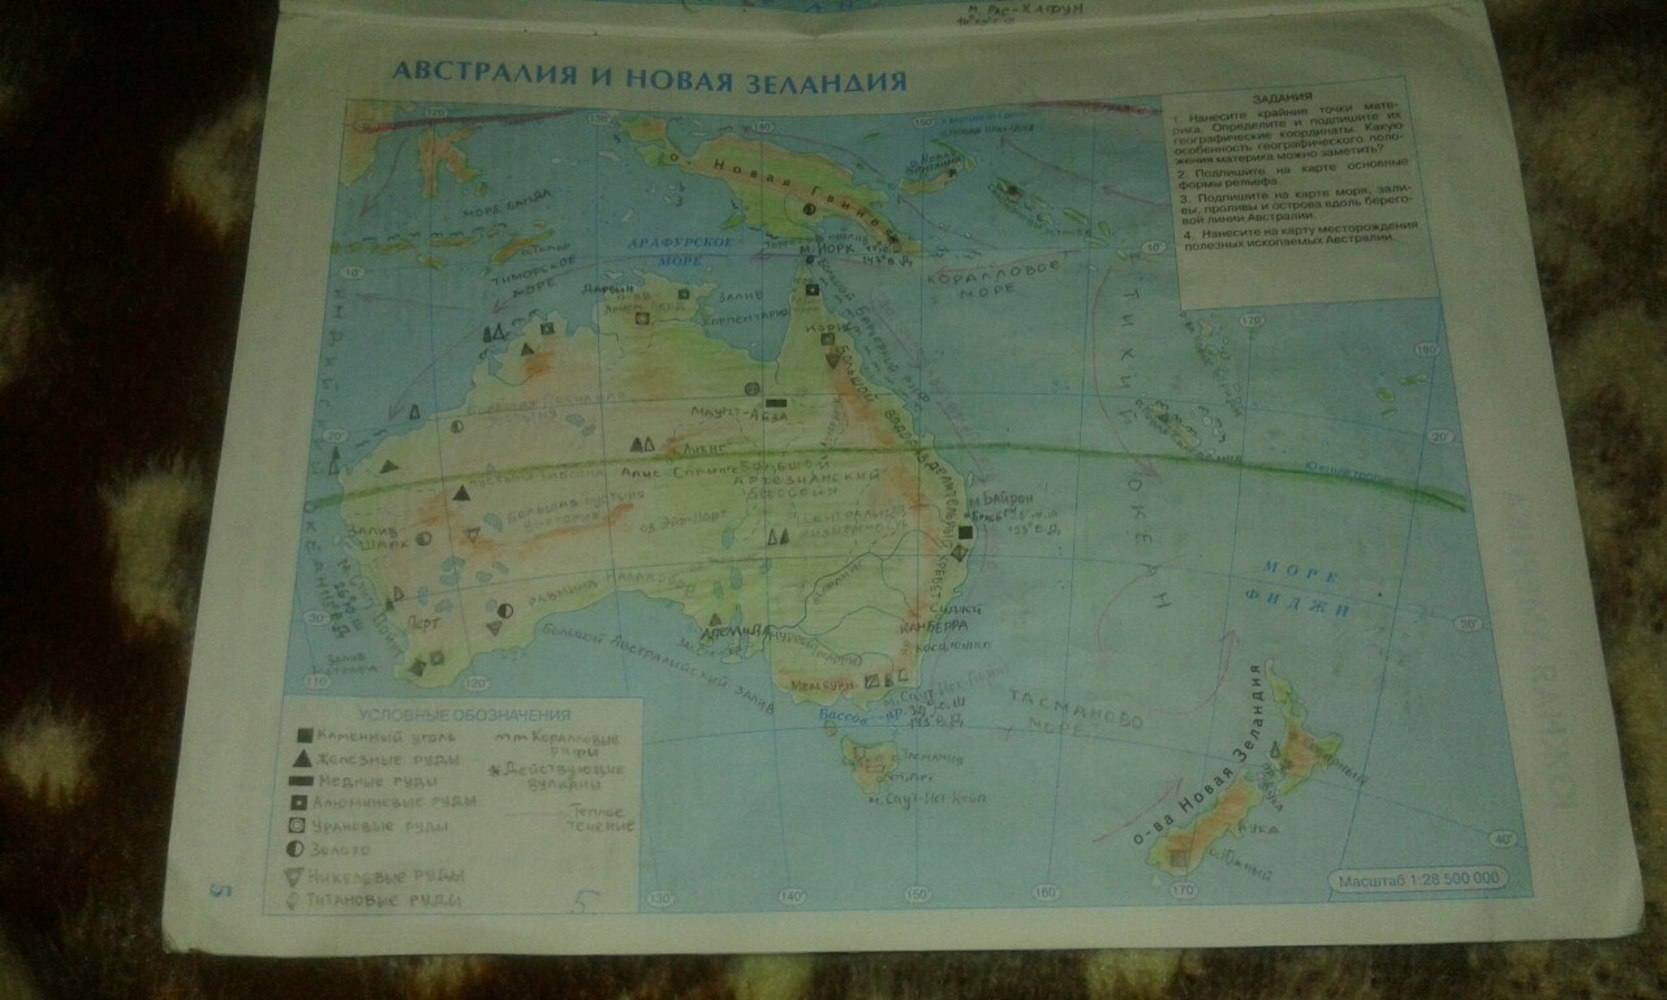 География 7 класс стр 38. География 7 класс контурные карты Австралия и новая Зеландия. Гдз контурная карта Австралии новая Зеландия седьмой класс география. Контурная карта Австралии и новой Зеландии 7 класс номенклатура. Гдз по контурной карте по географии 7 класс Австралия и новая Зеландия.